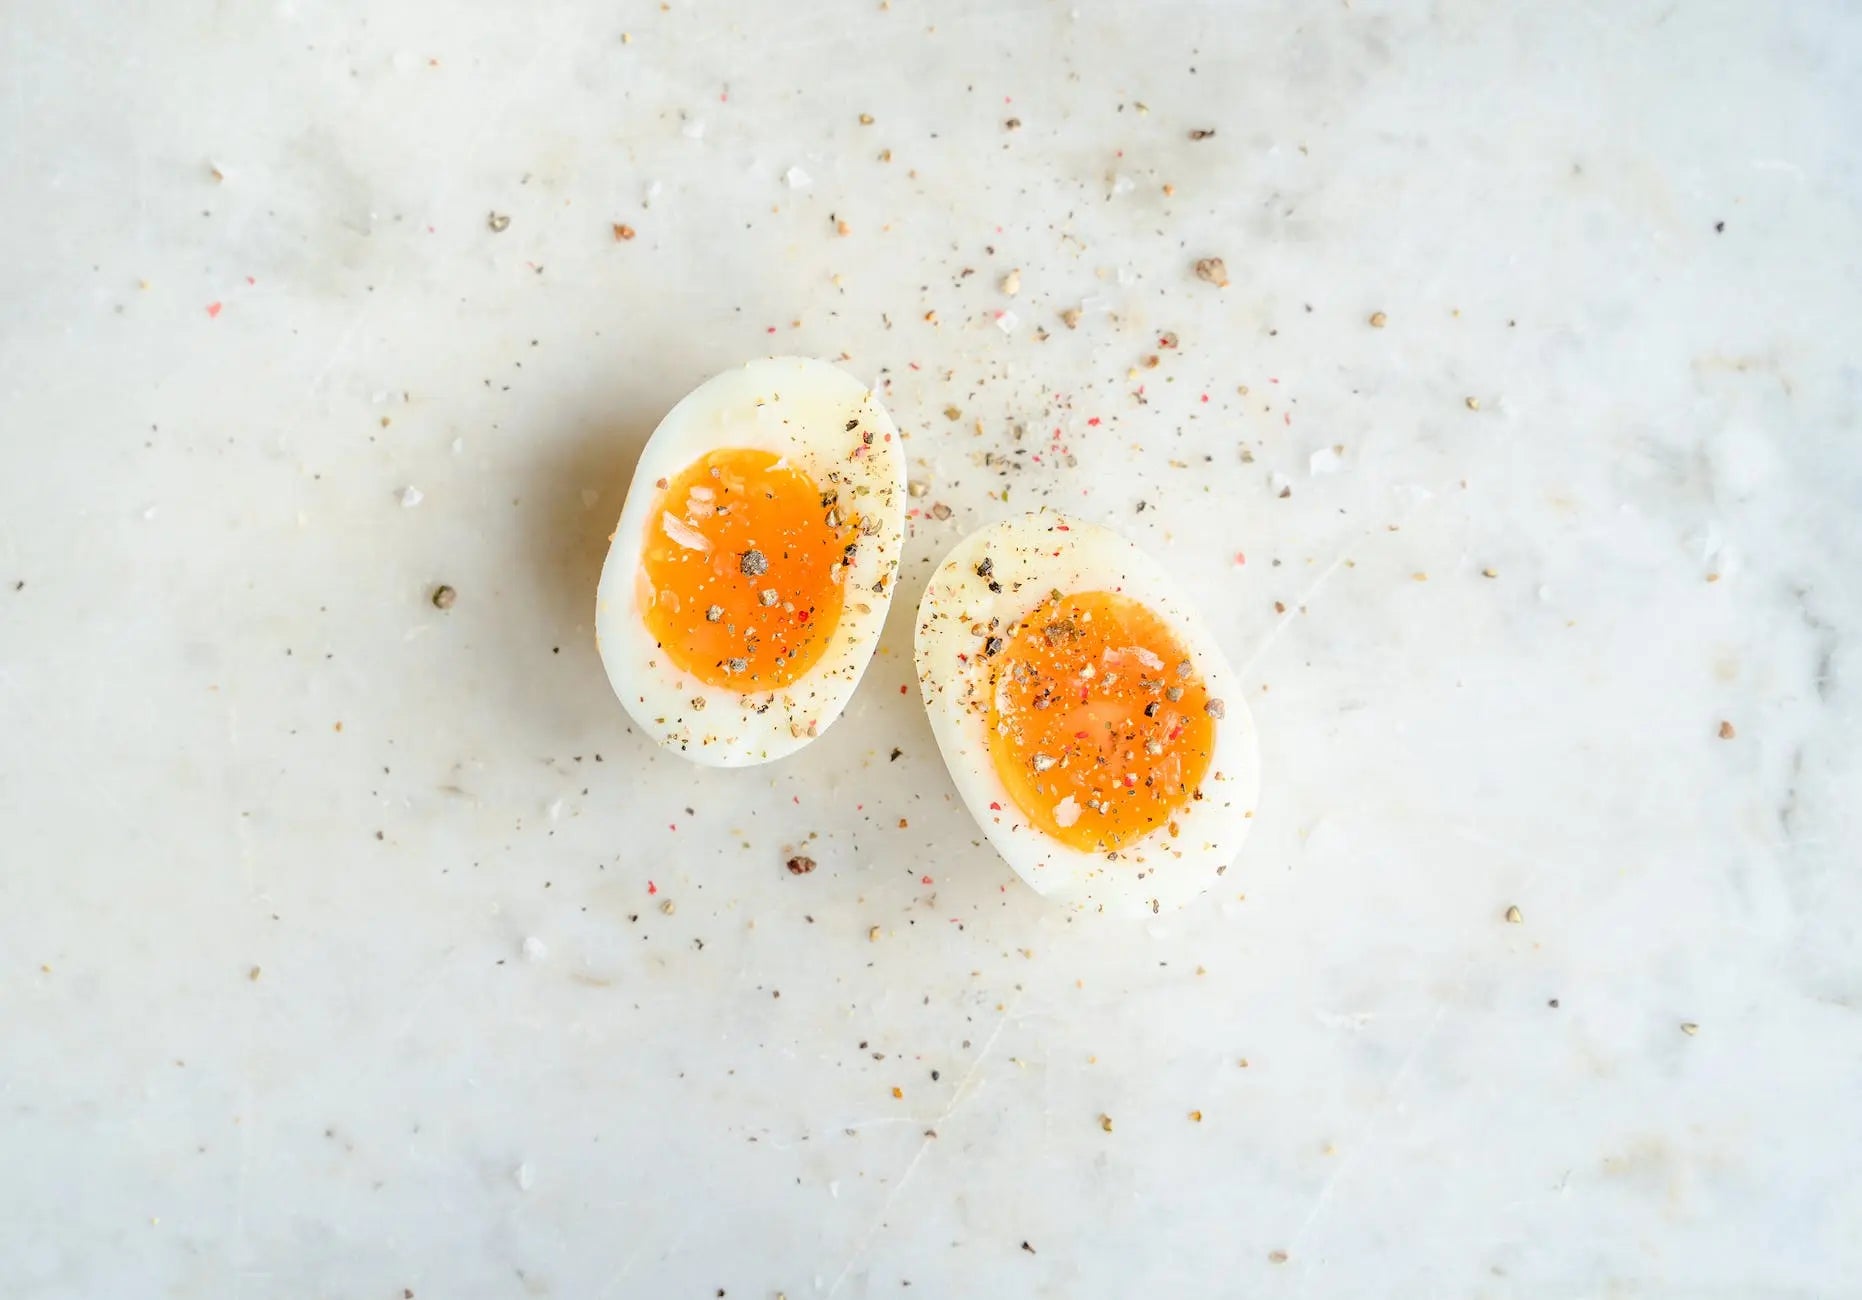 Egg-cellent Storage Tips: How Long Do Hard Boiled Eggs Last in Fridge? - Fridge.com